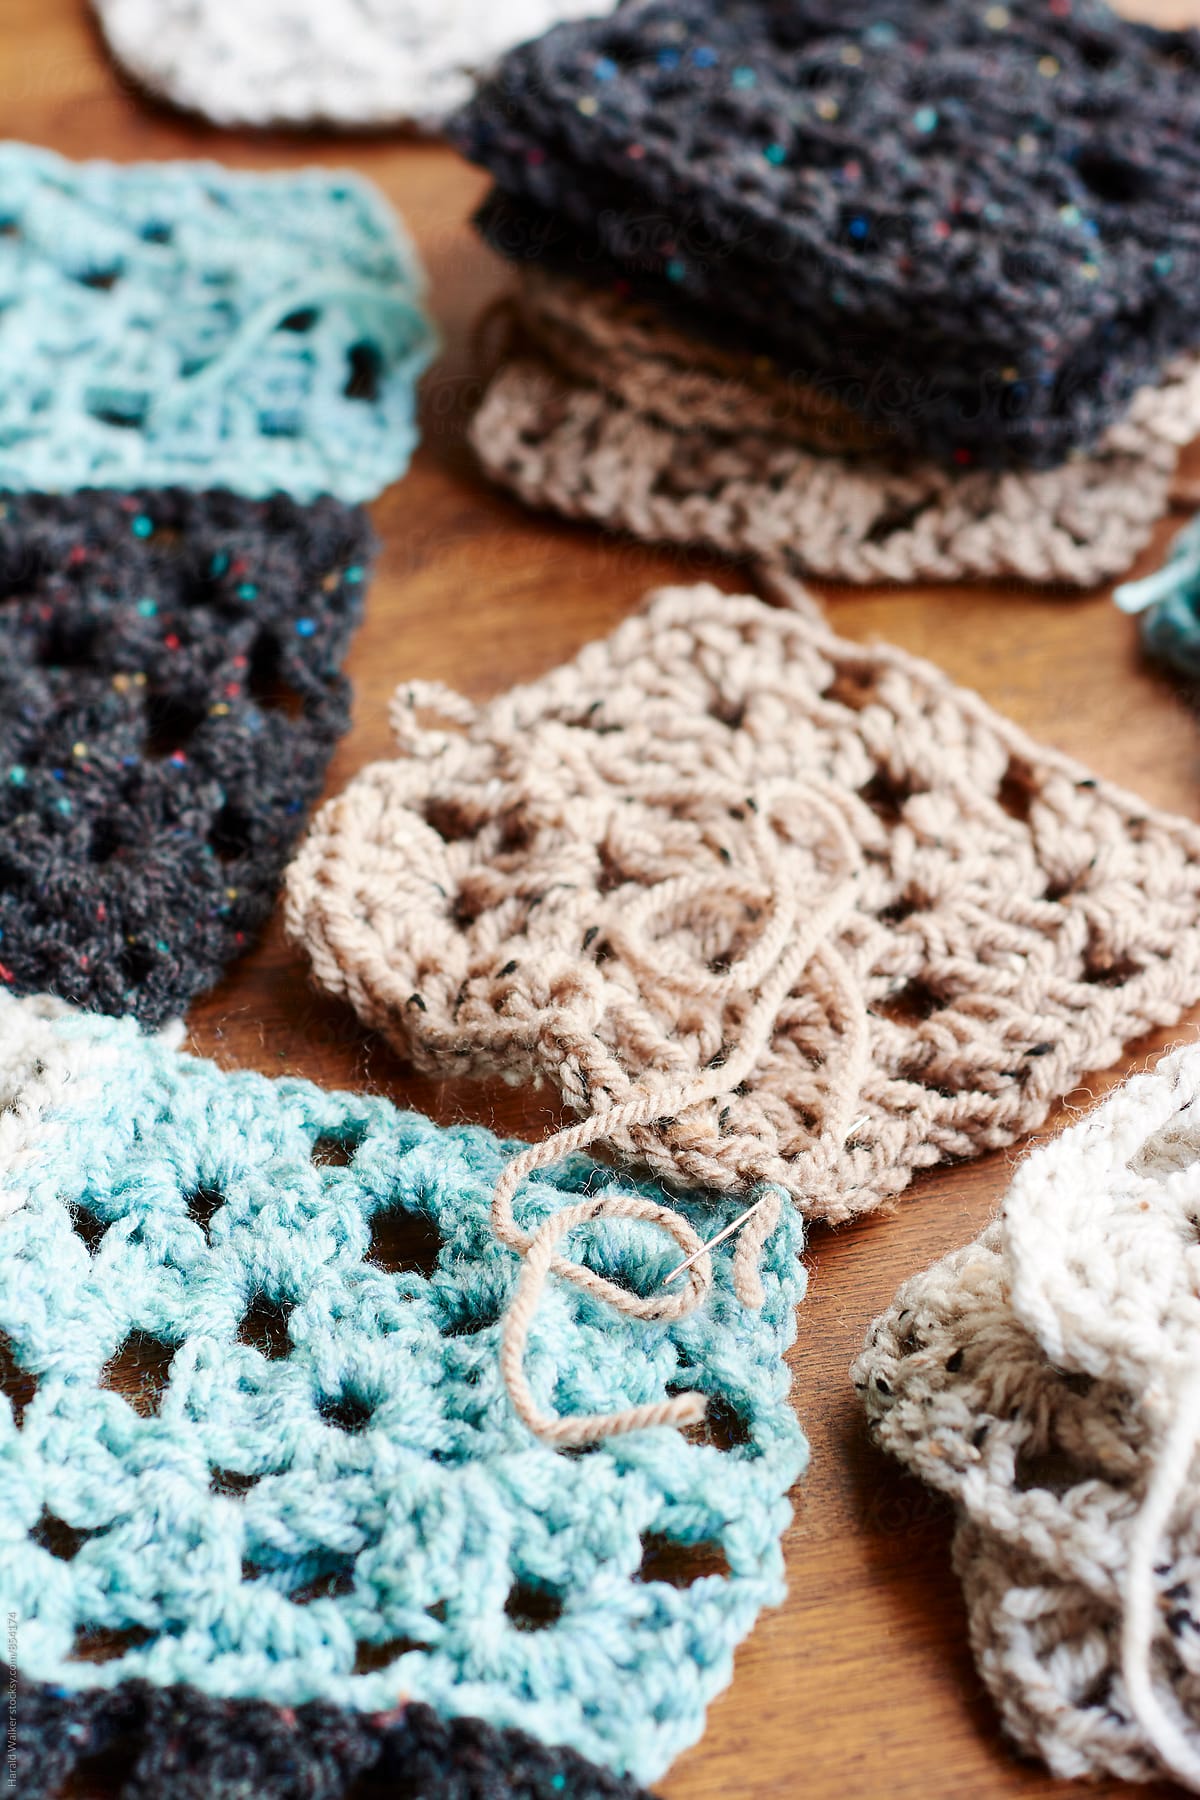 Making a crochet blanket